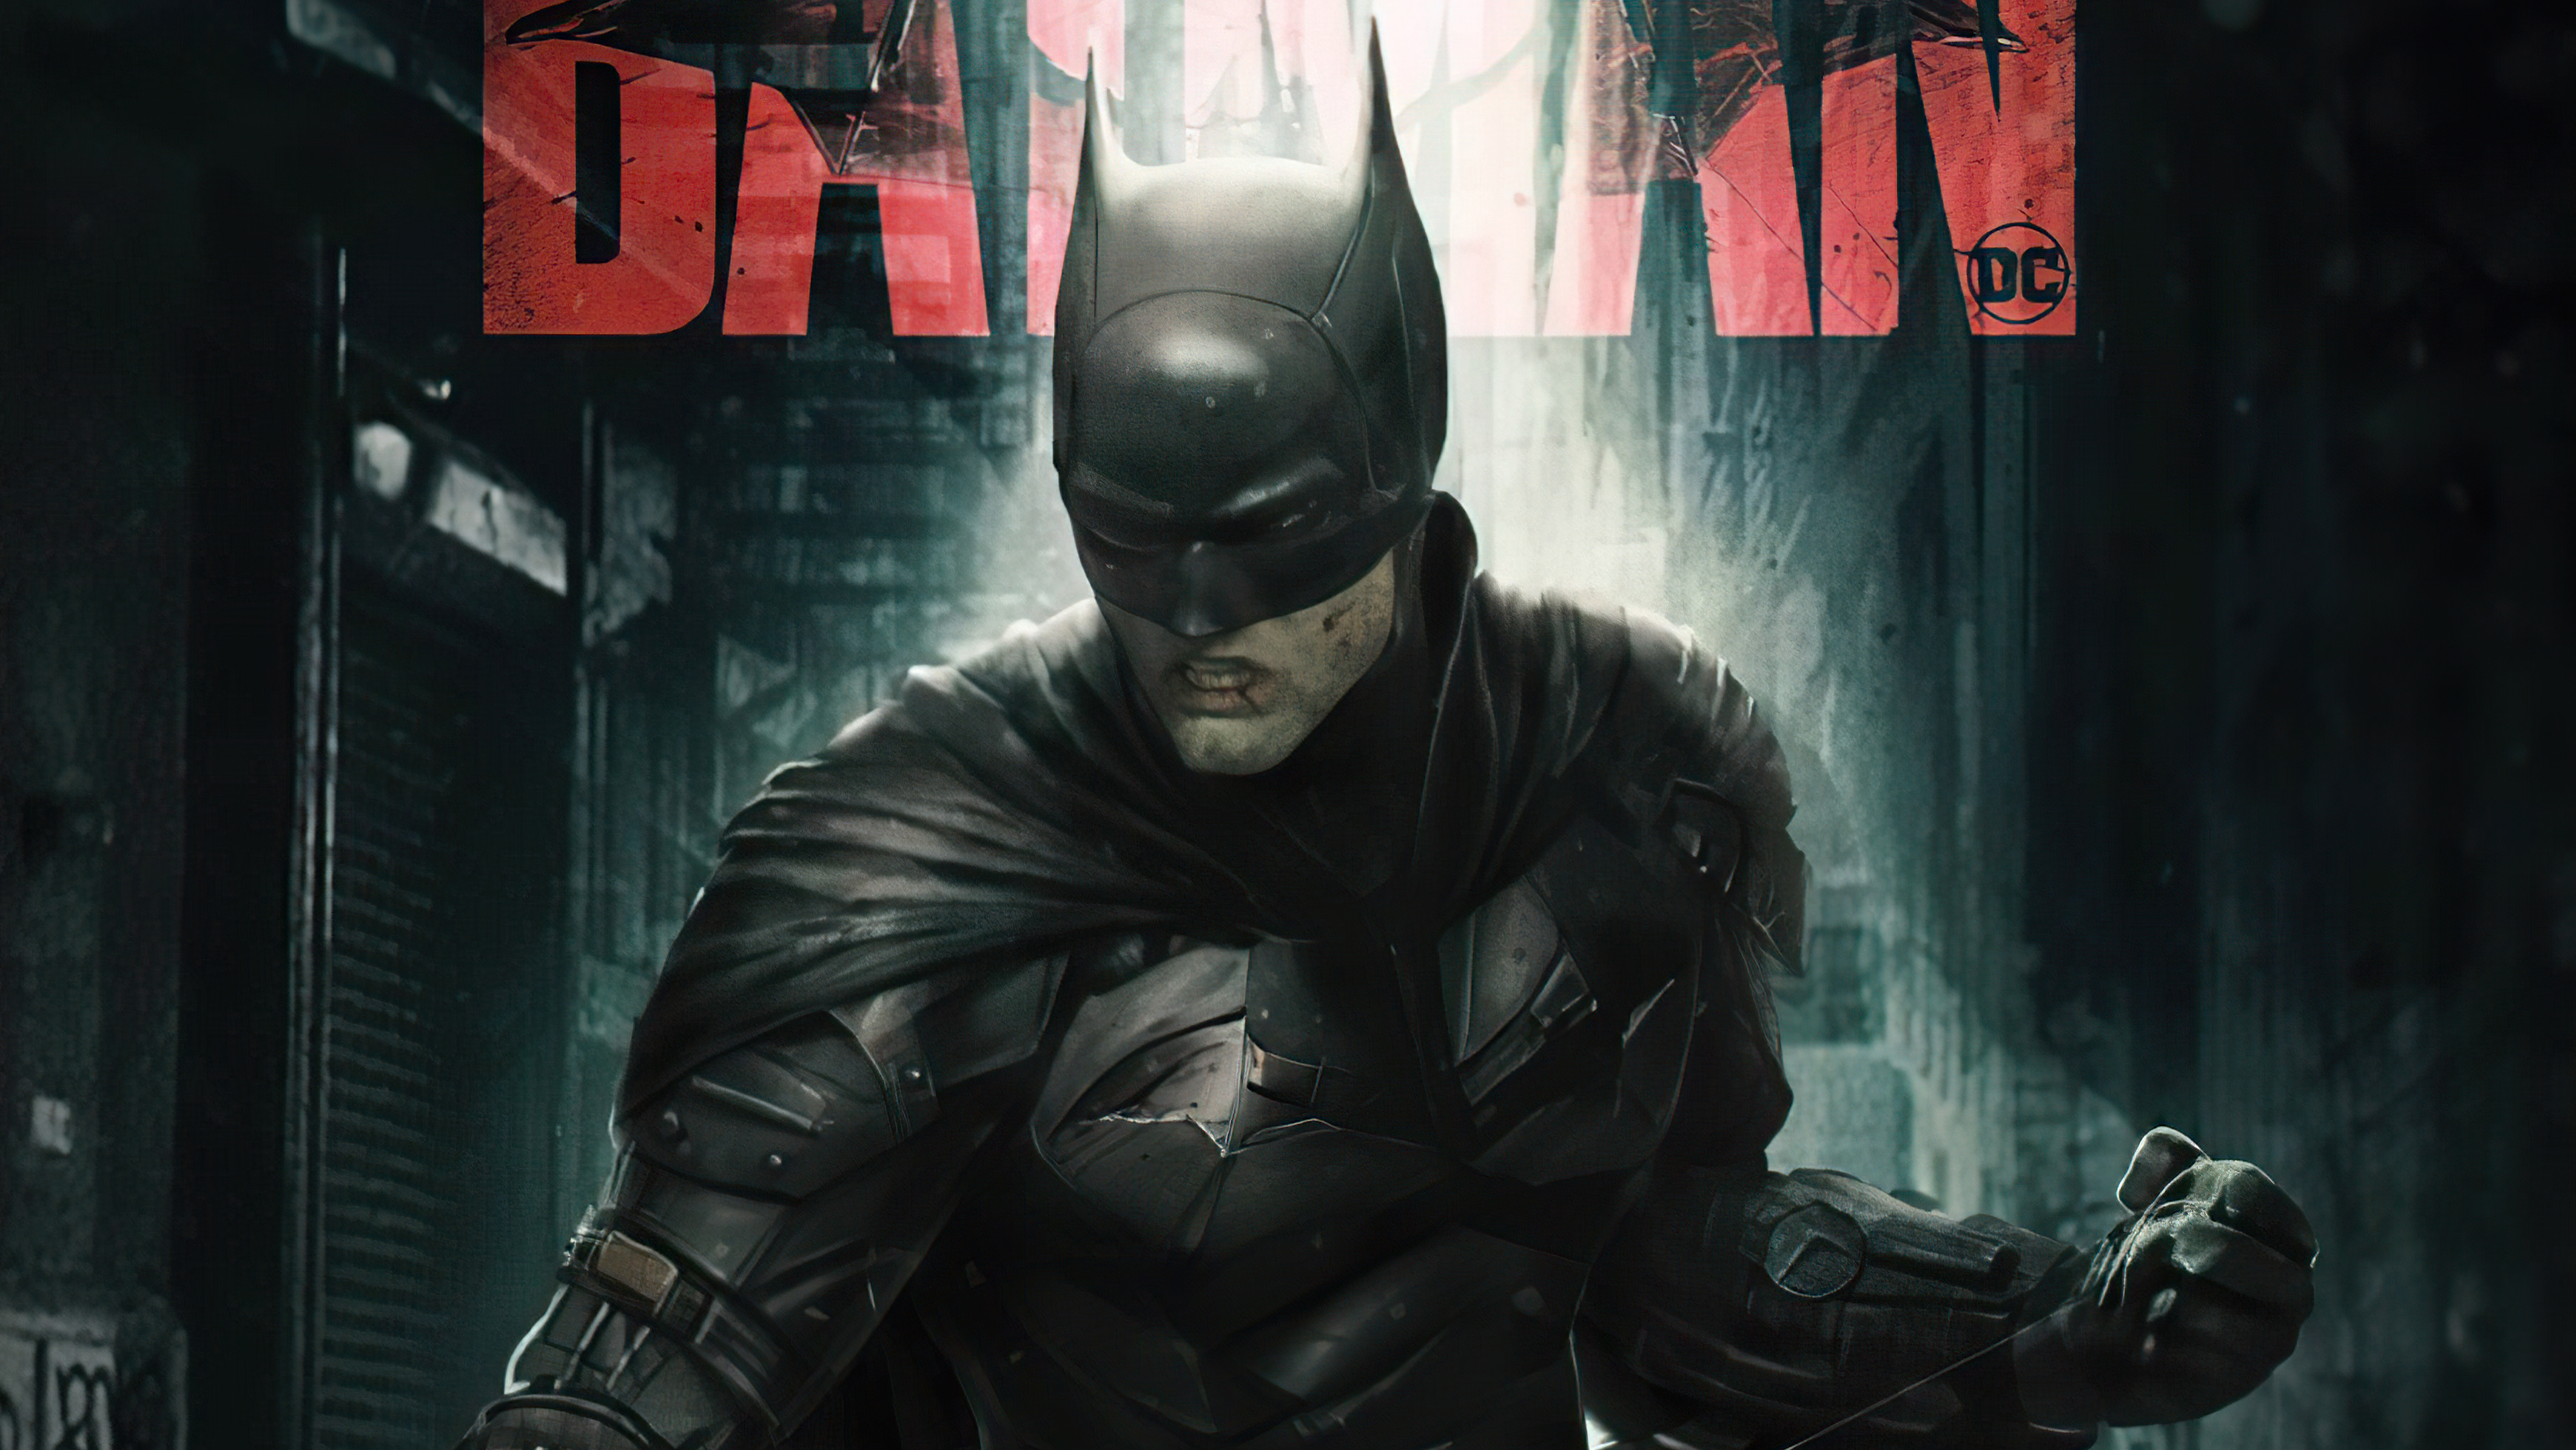 Fondos de Pantalla The Batman 2022 Poster, Imágenes y Fotos Gratis